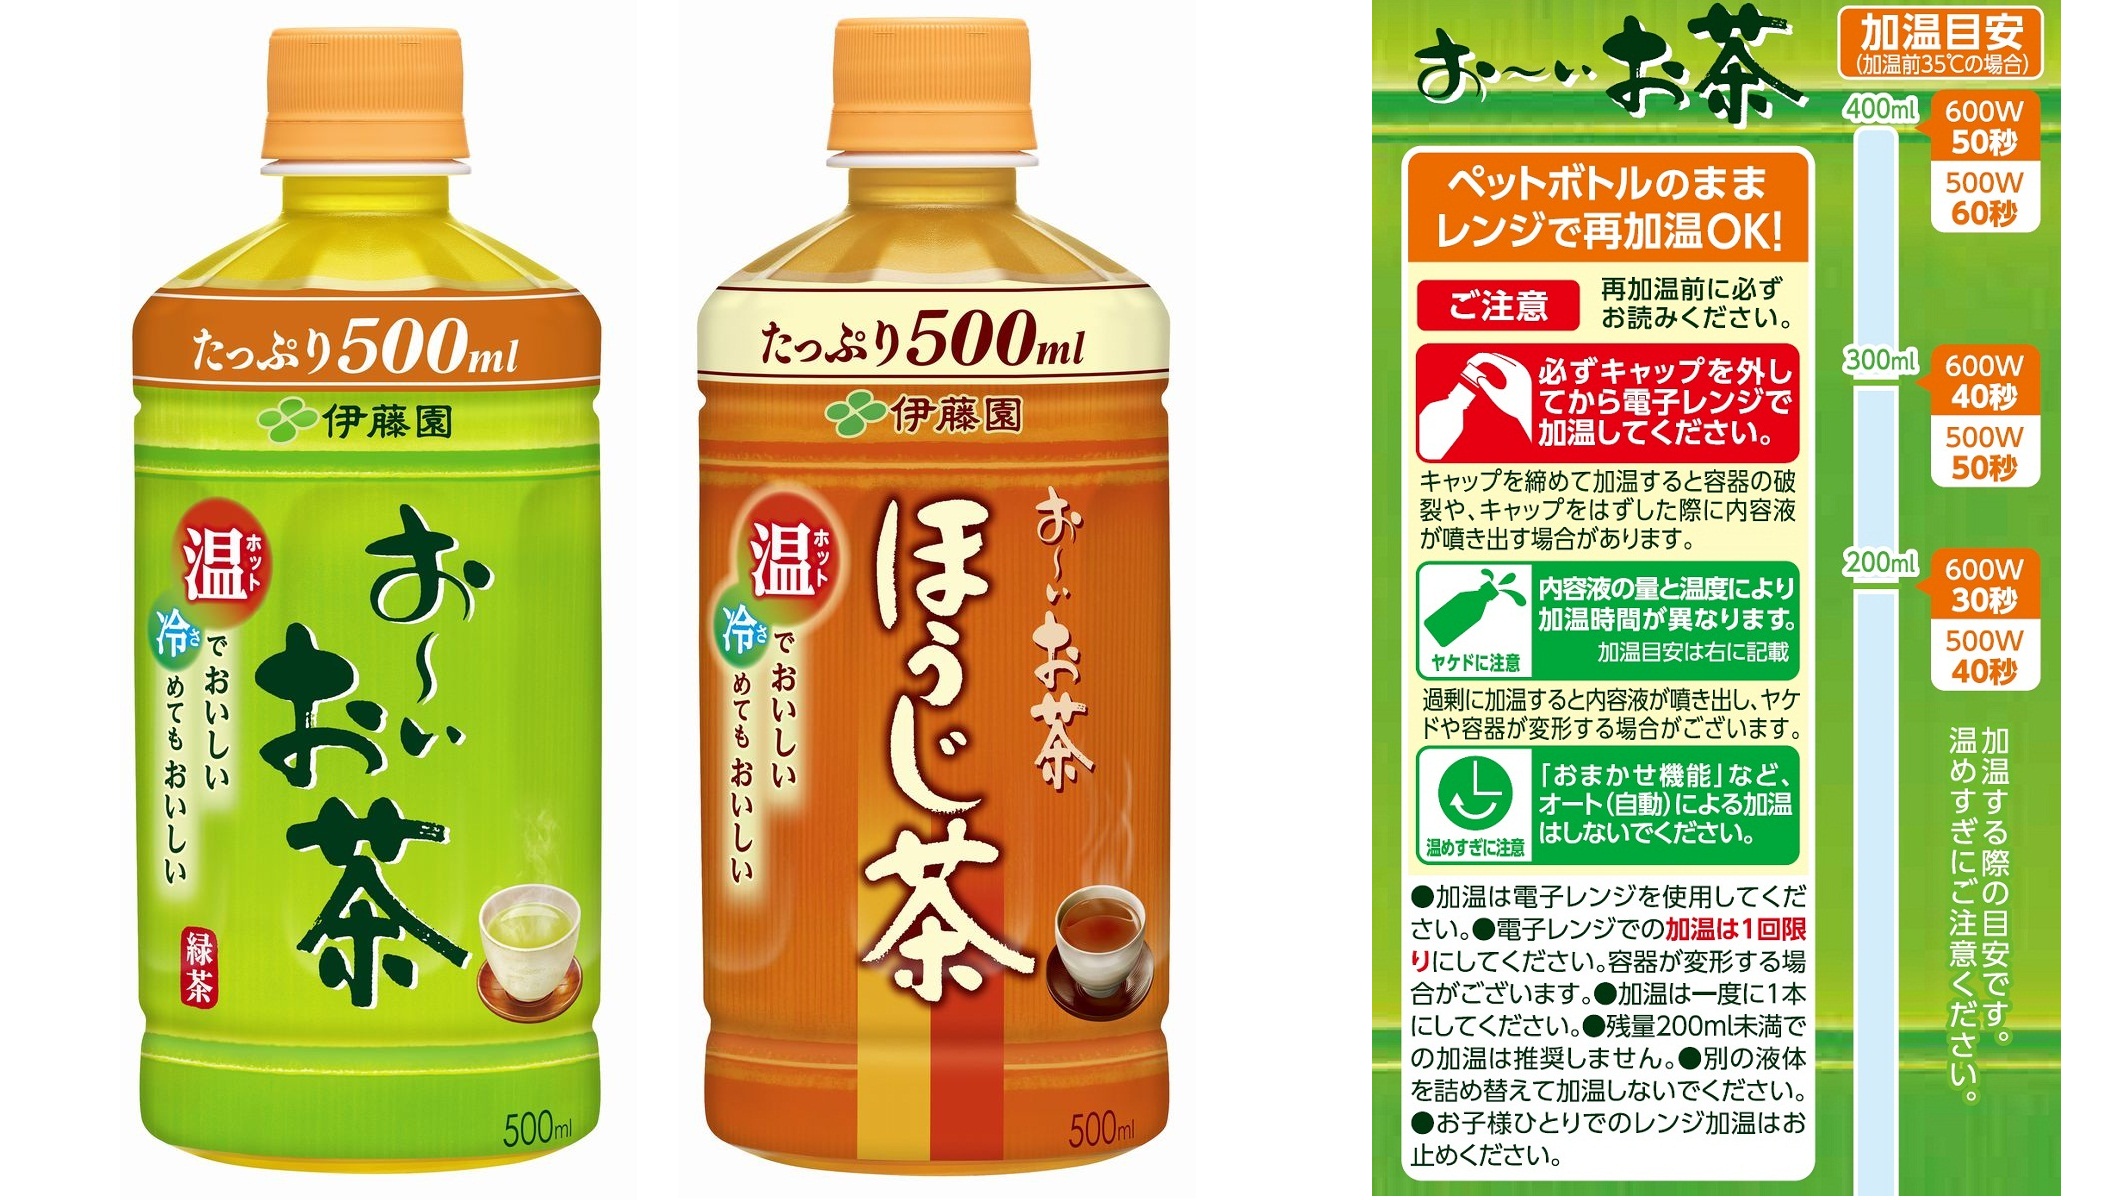 新型増量ホット専用 お いお茶 緑茶 同 ほうじ茶 9月5日 月 より販売開始 ニュースリリース 伊藤園